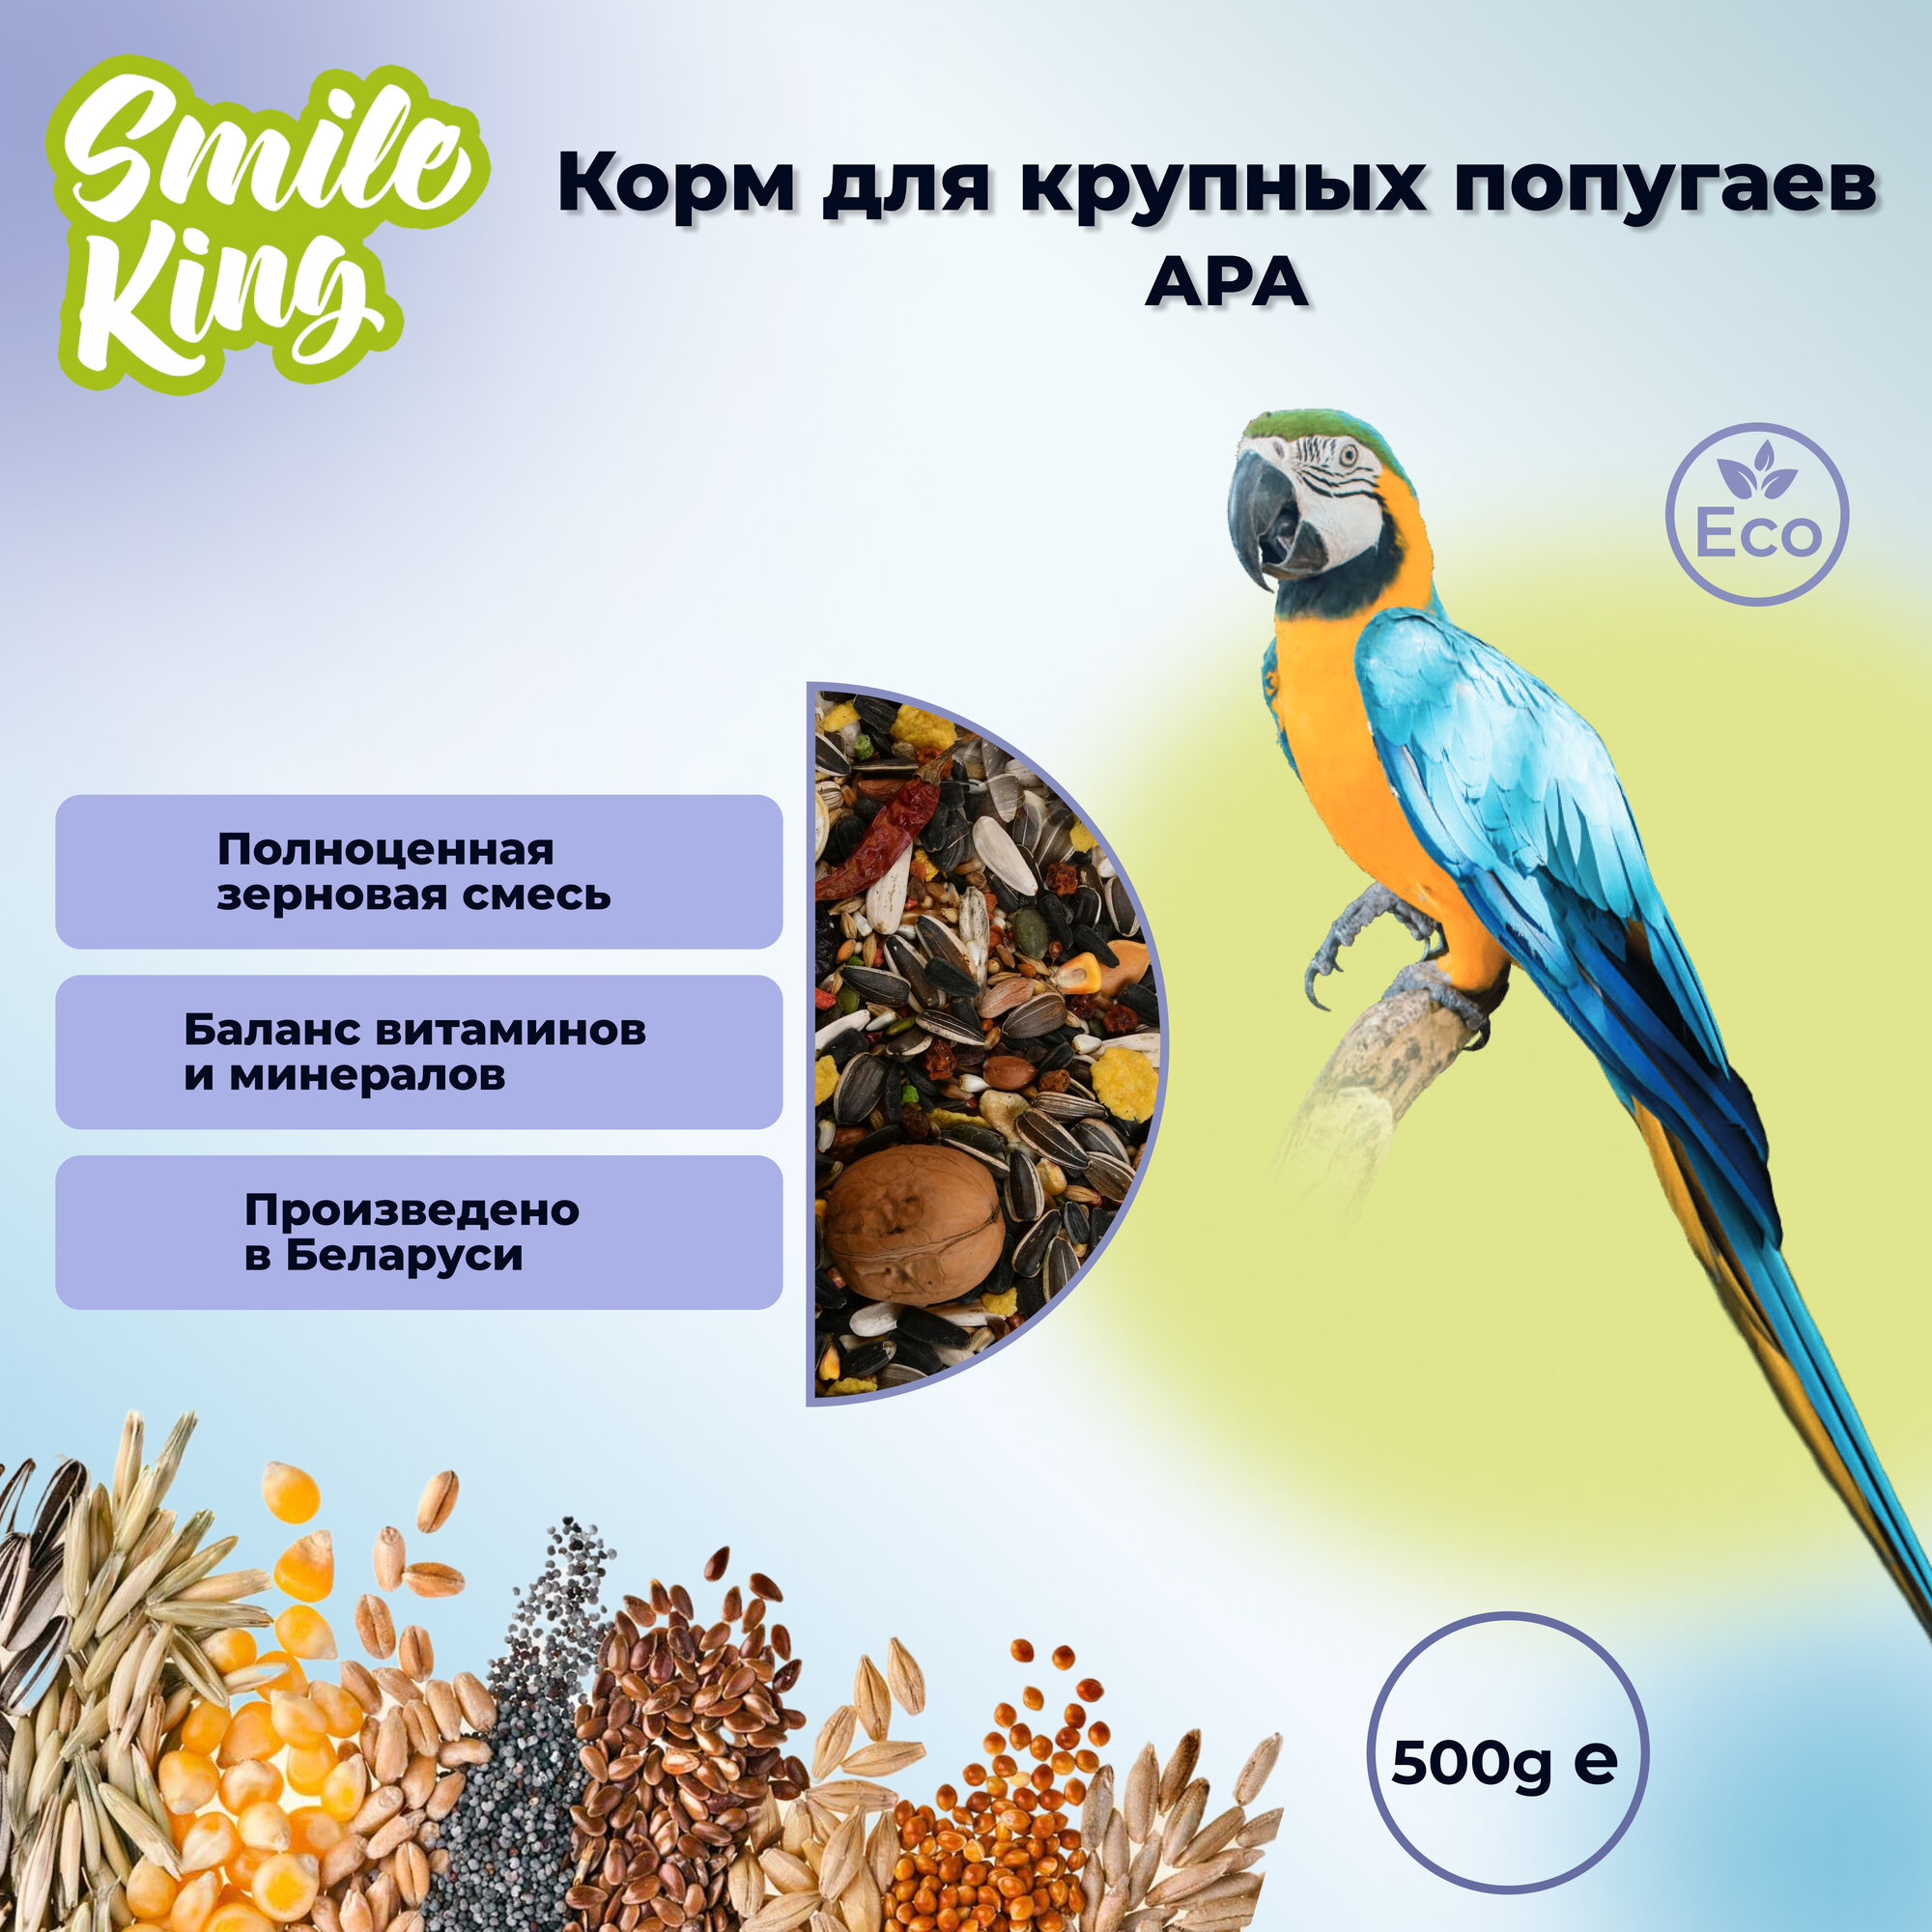 Корм для крупных попугаев Ара "Smile King" 500г